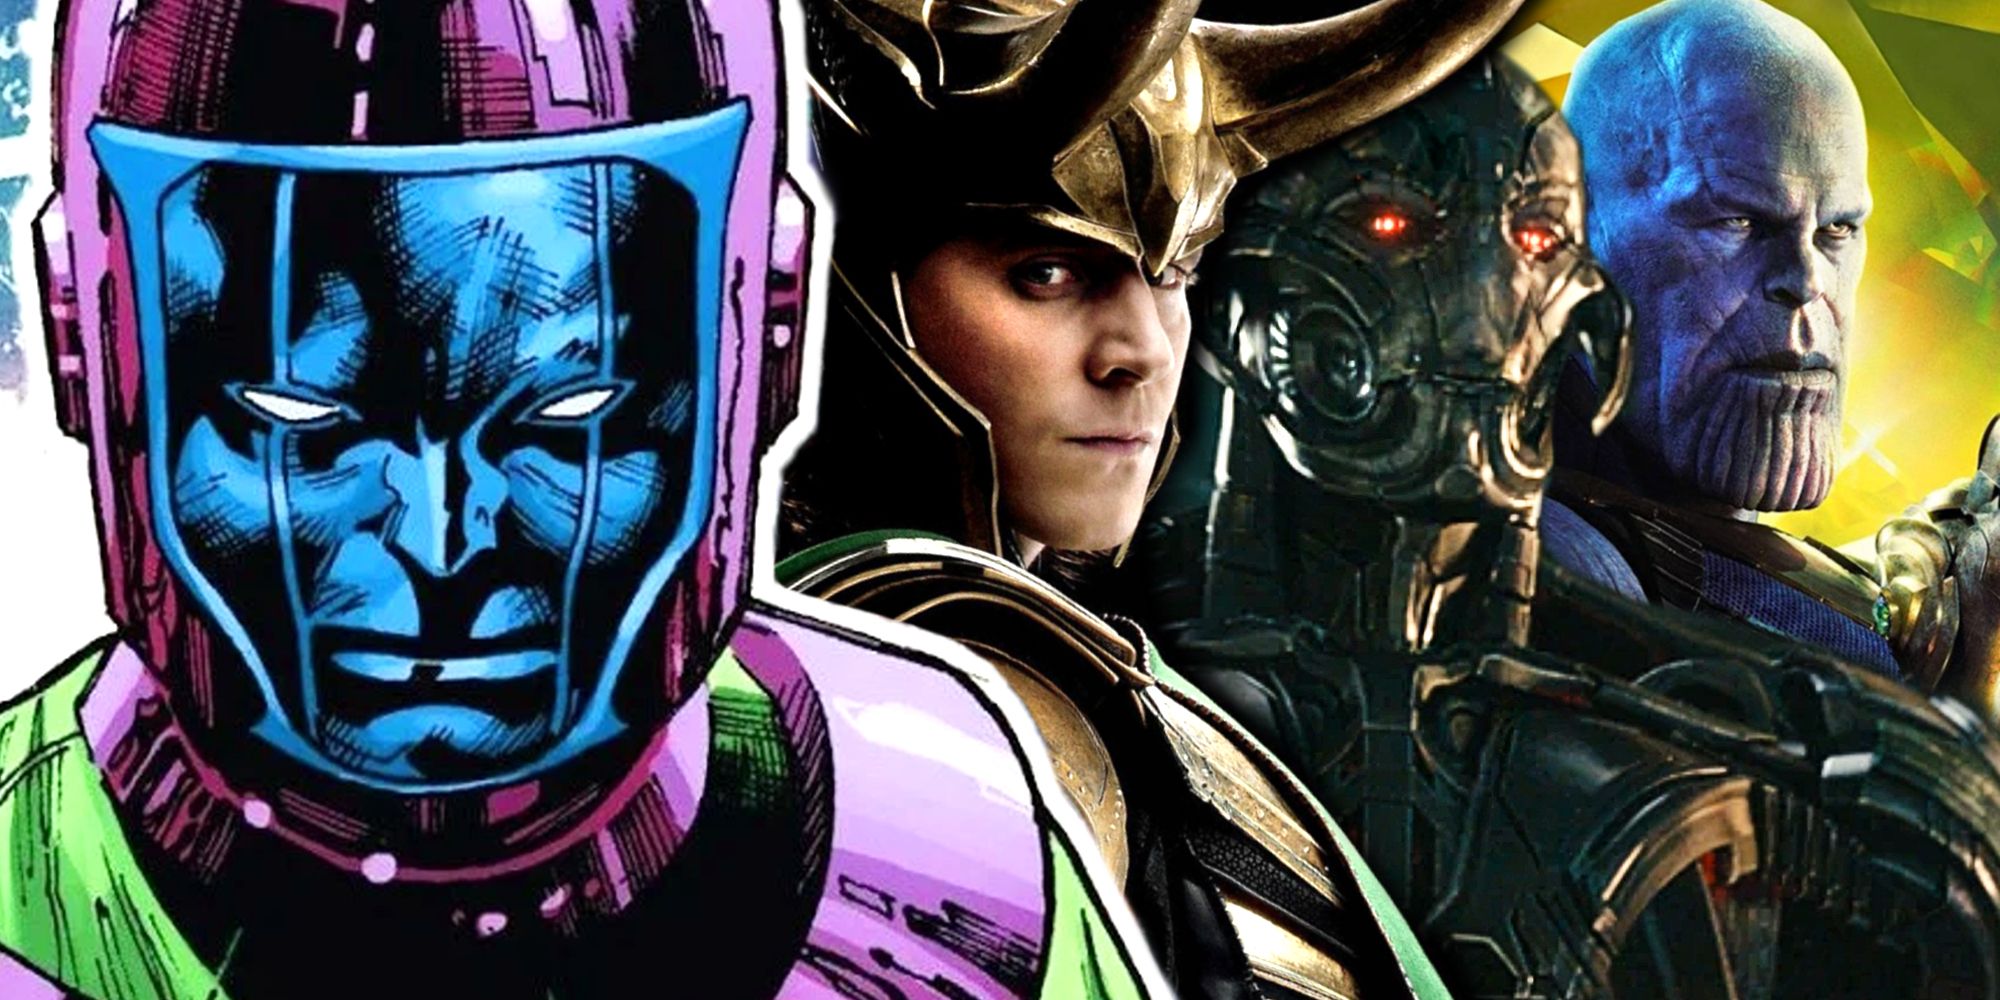 MCU Avengers Villains Loki, Ultron, Thanos, and Kang